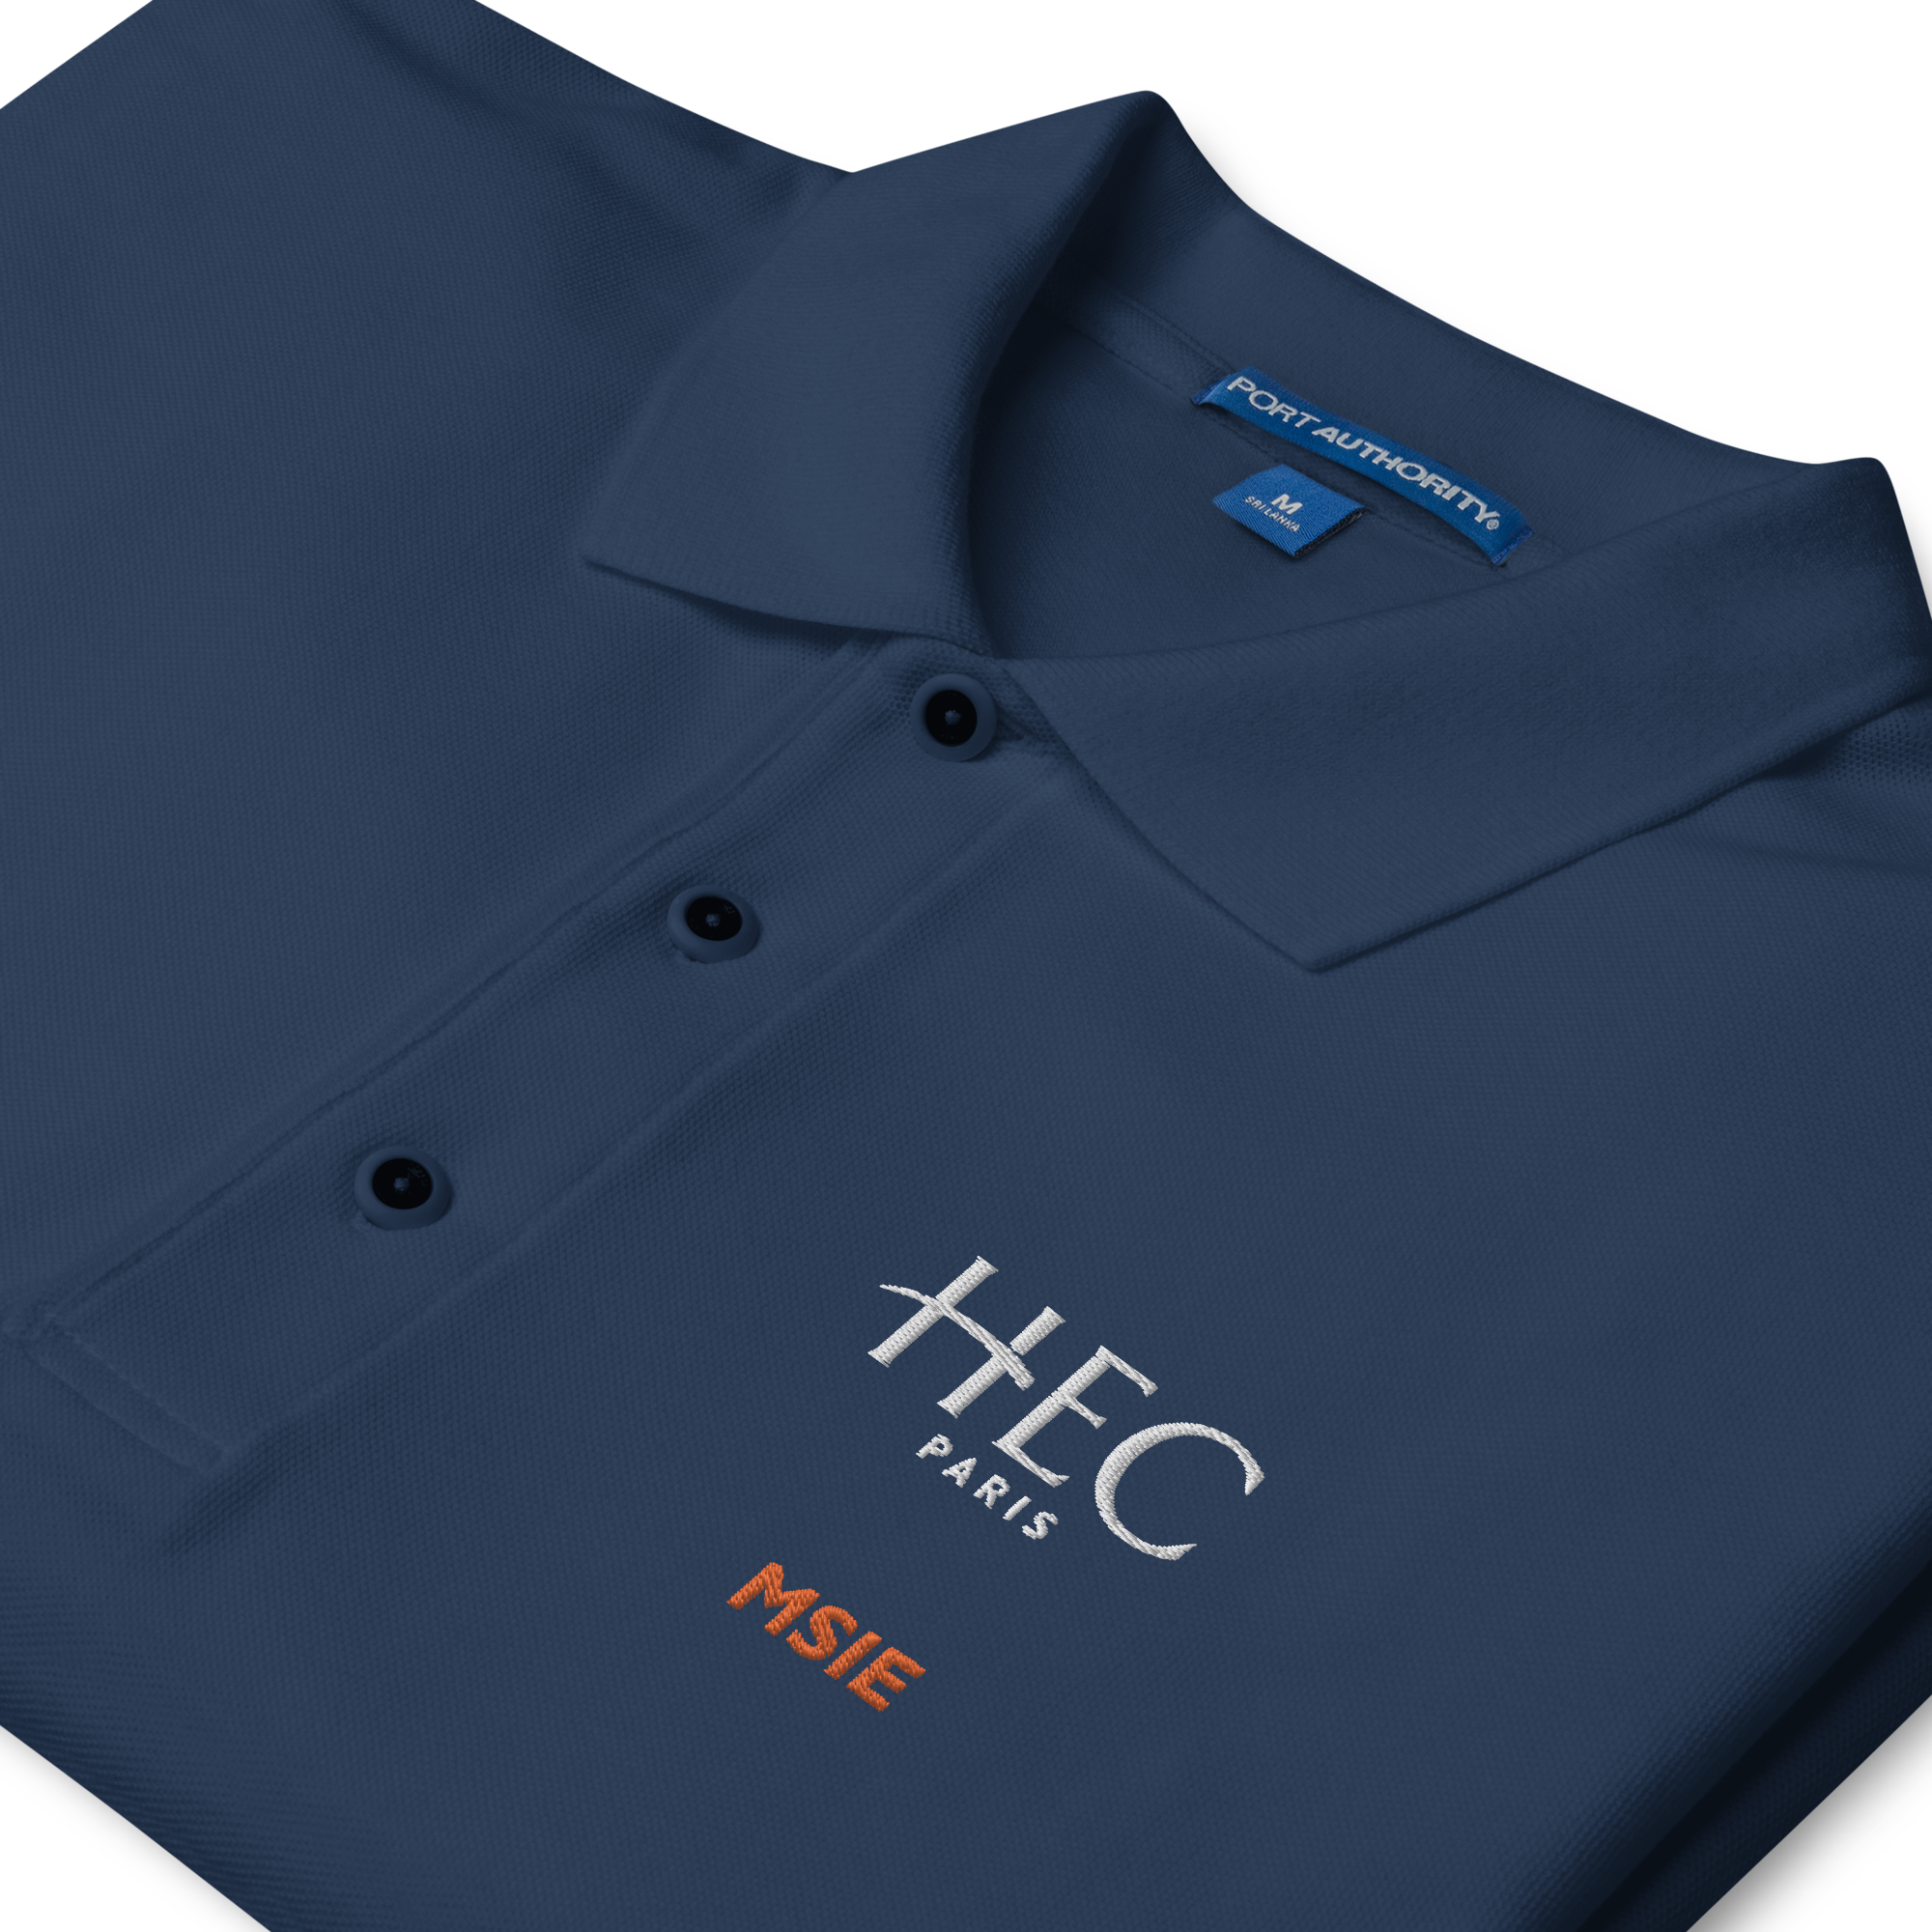 HEC Paris MSIE Premium Polo